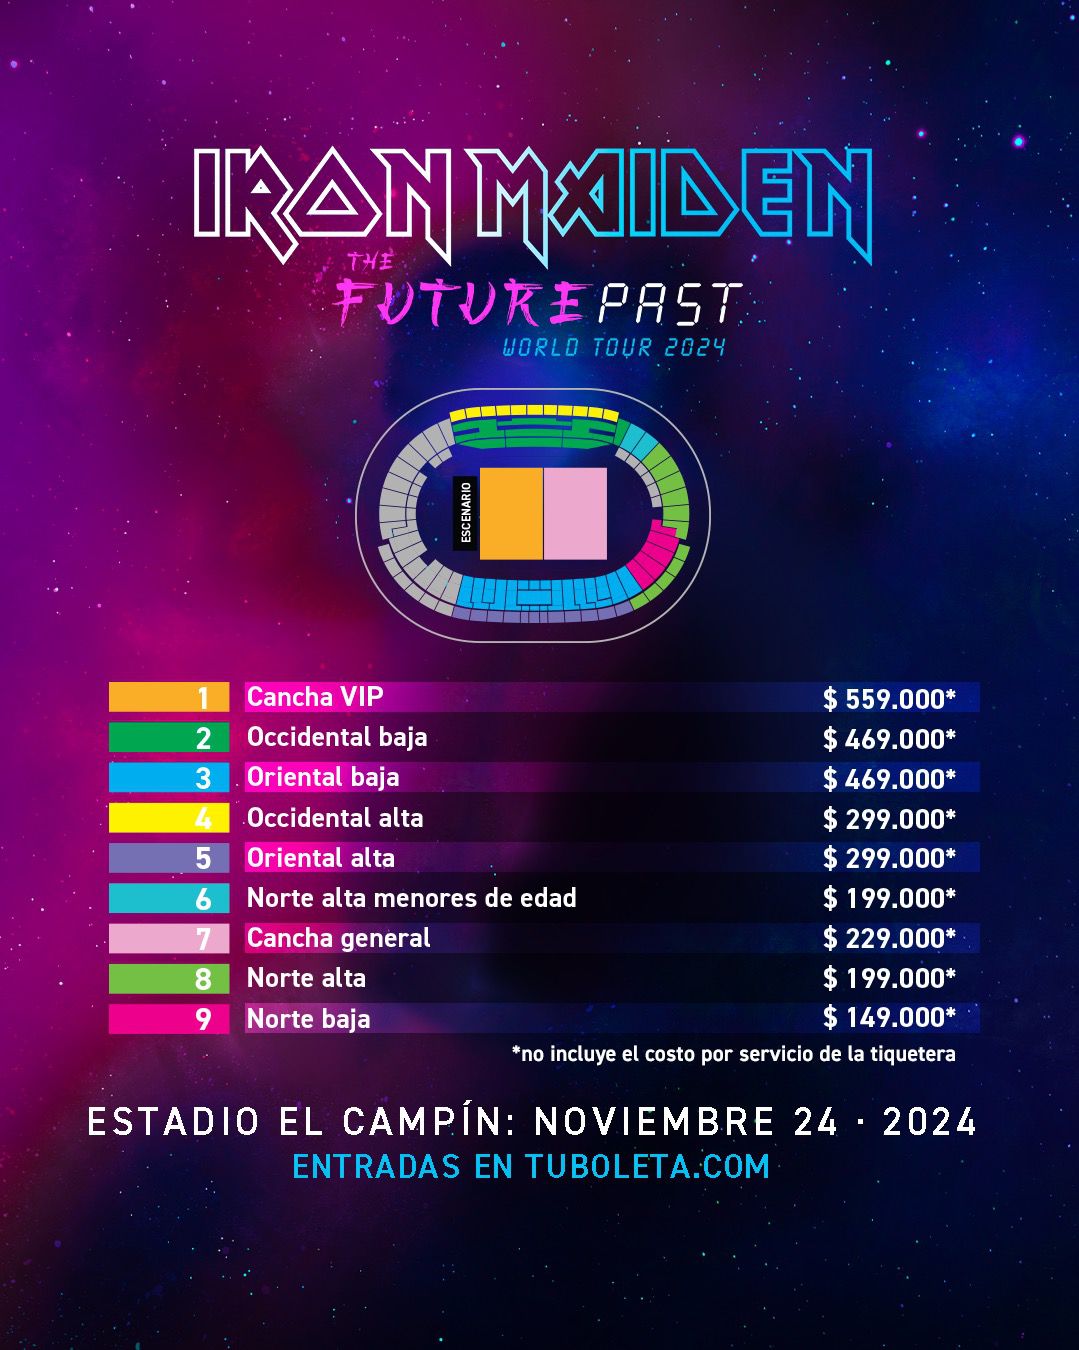 Precios de las entradas del concierto de Iron Maiden en Colombia.